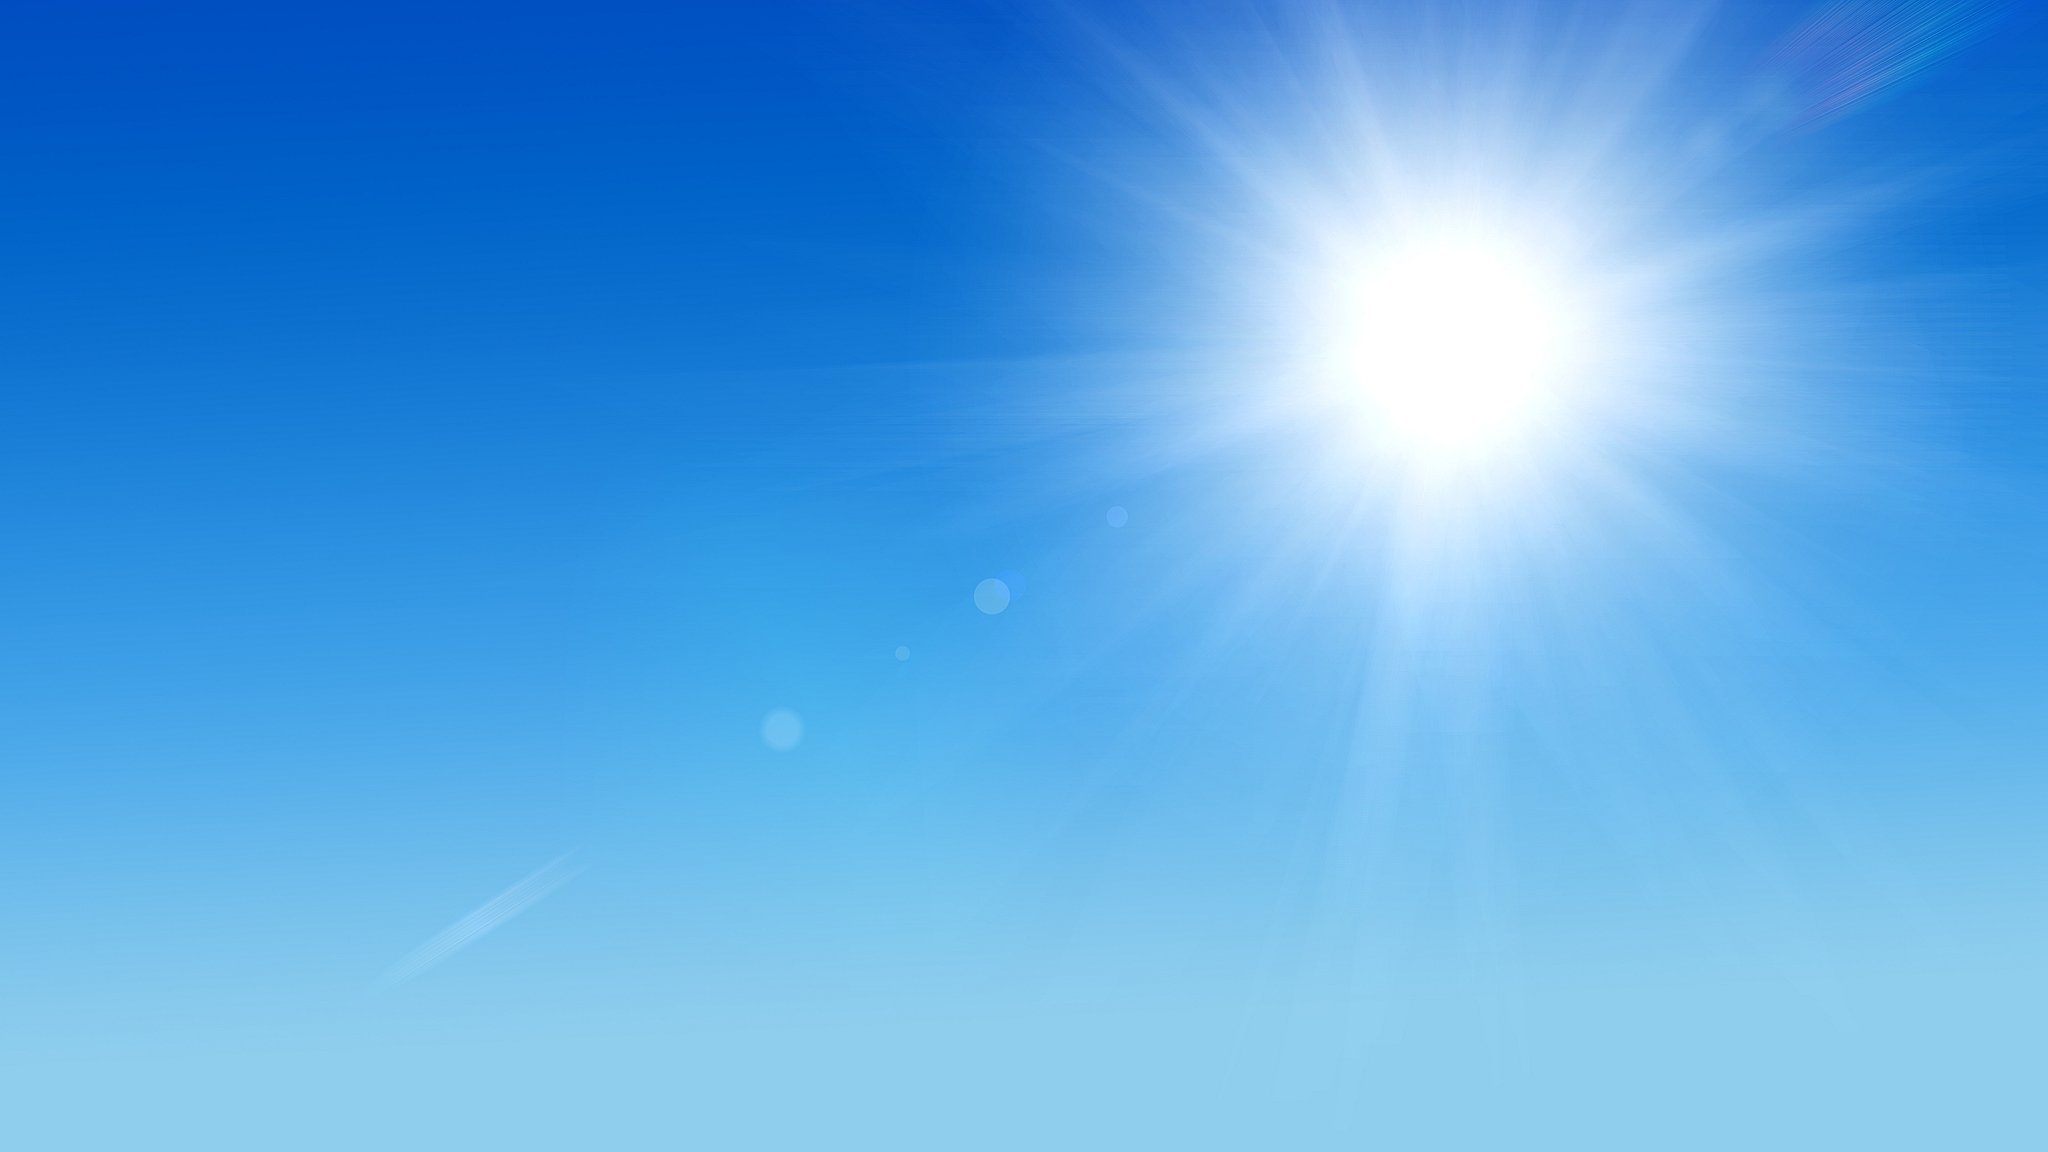 Meteo Solarino: oggi domenica 27 Agosto sereno, previsto caldo intenso.